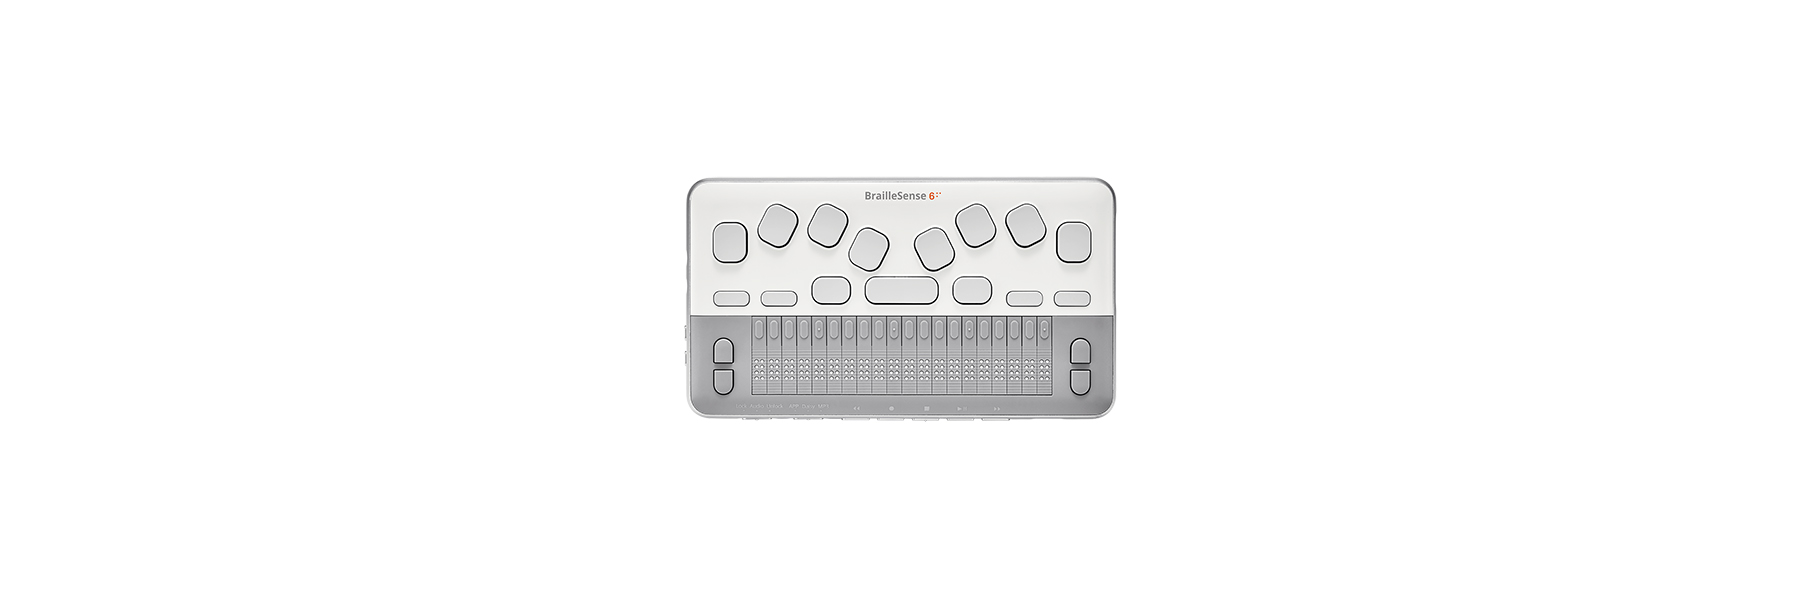 Abbildung eines BrailleSense 6 Mini